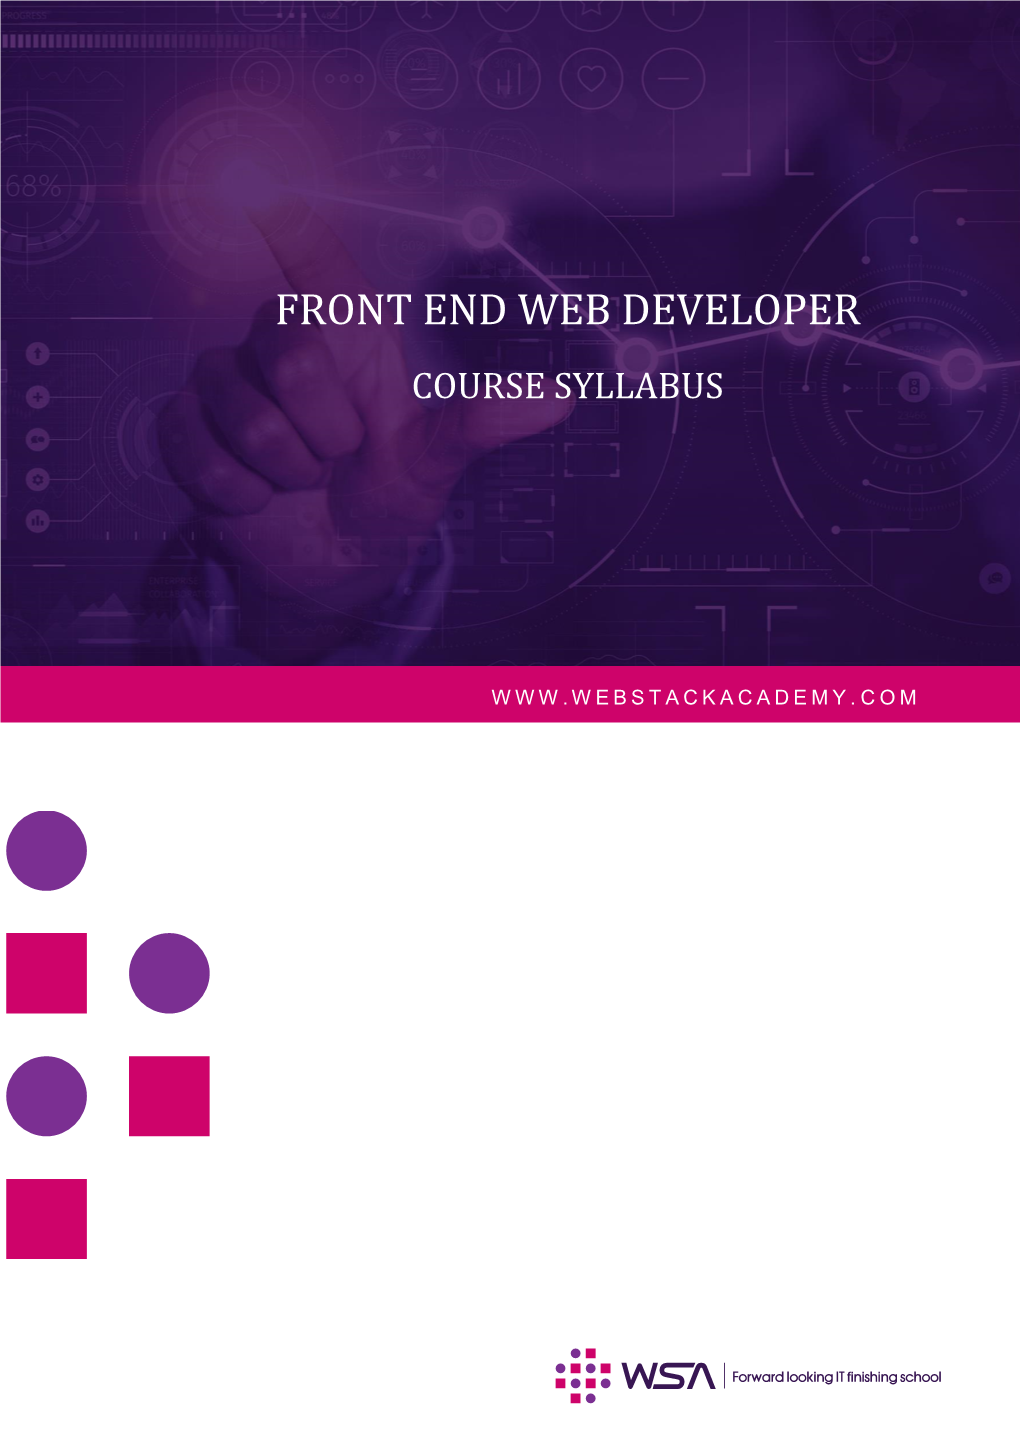 Front End Web Developer Course Syllabus